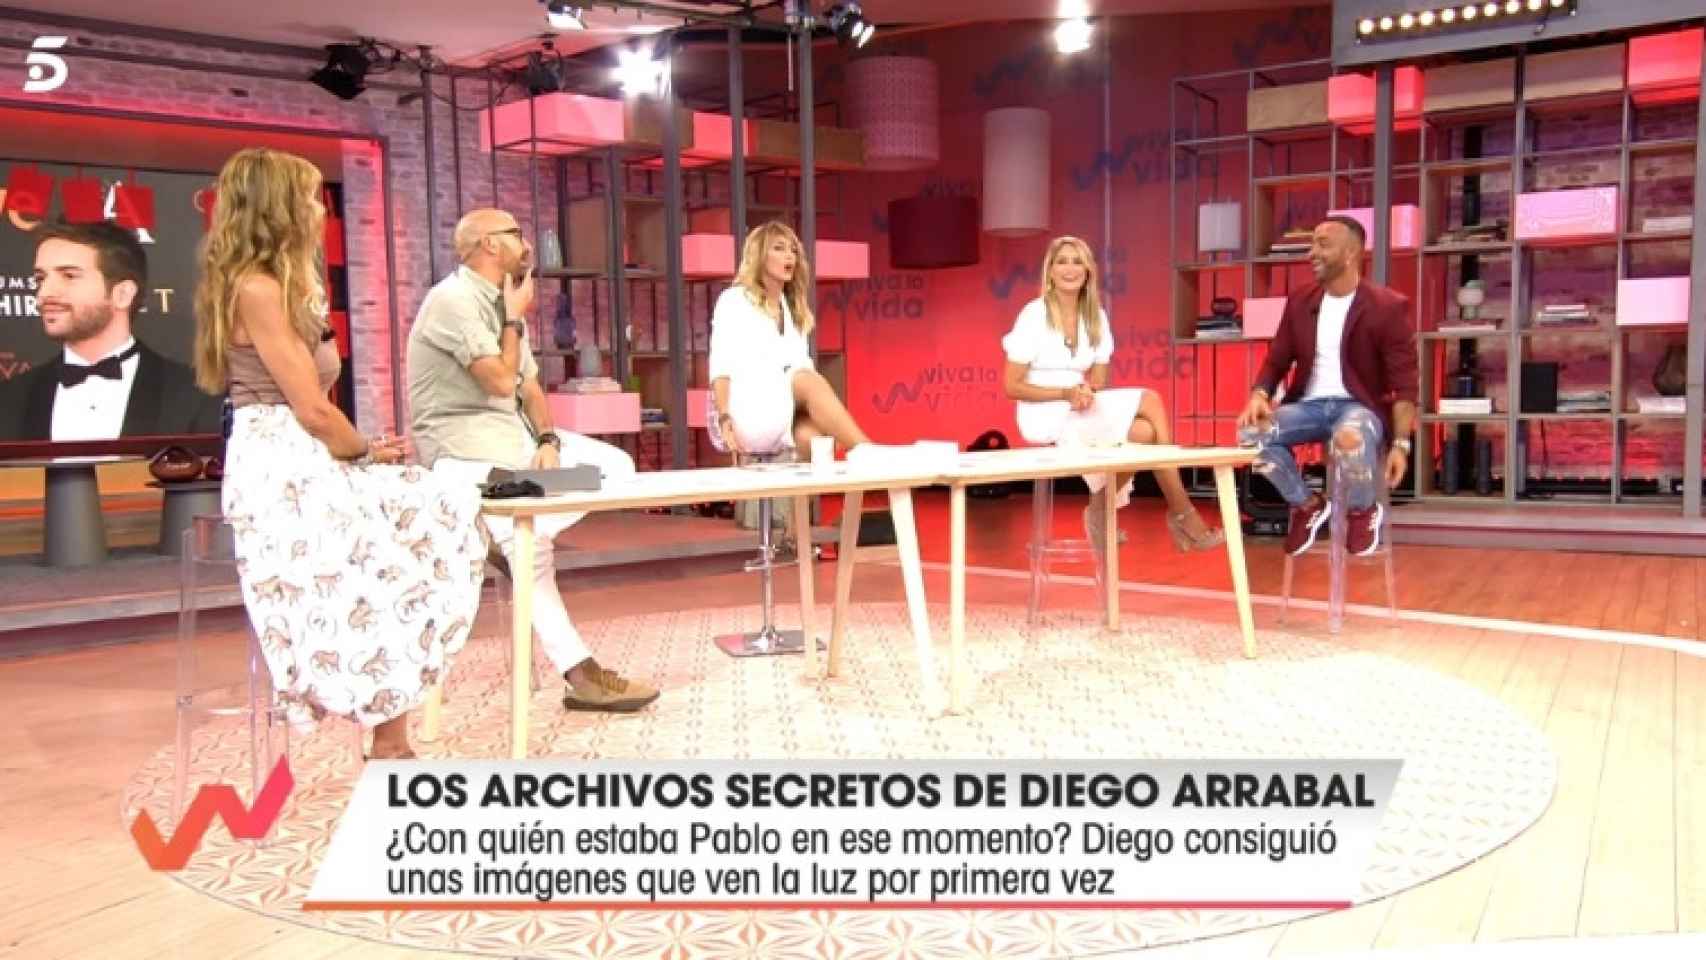 Diego Arrabal mostrando fotos nunca antes vista de Pablo Alborán y su exnovio.